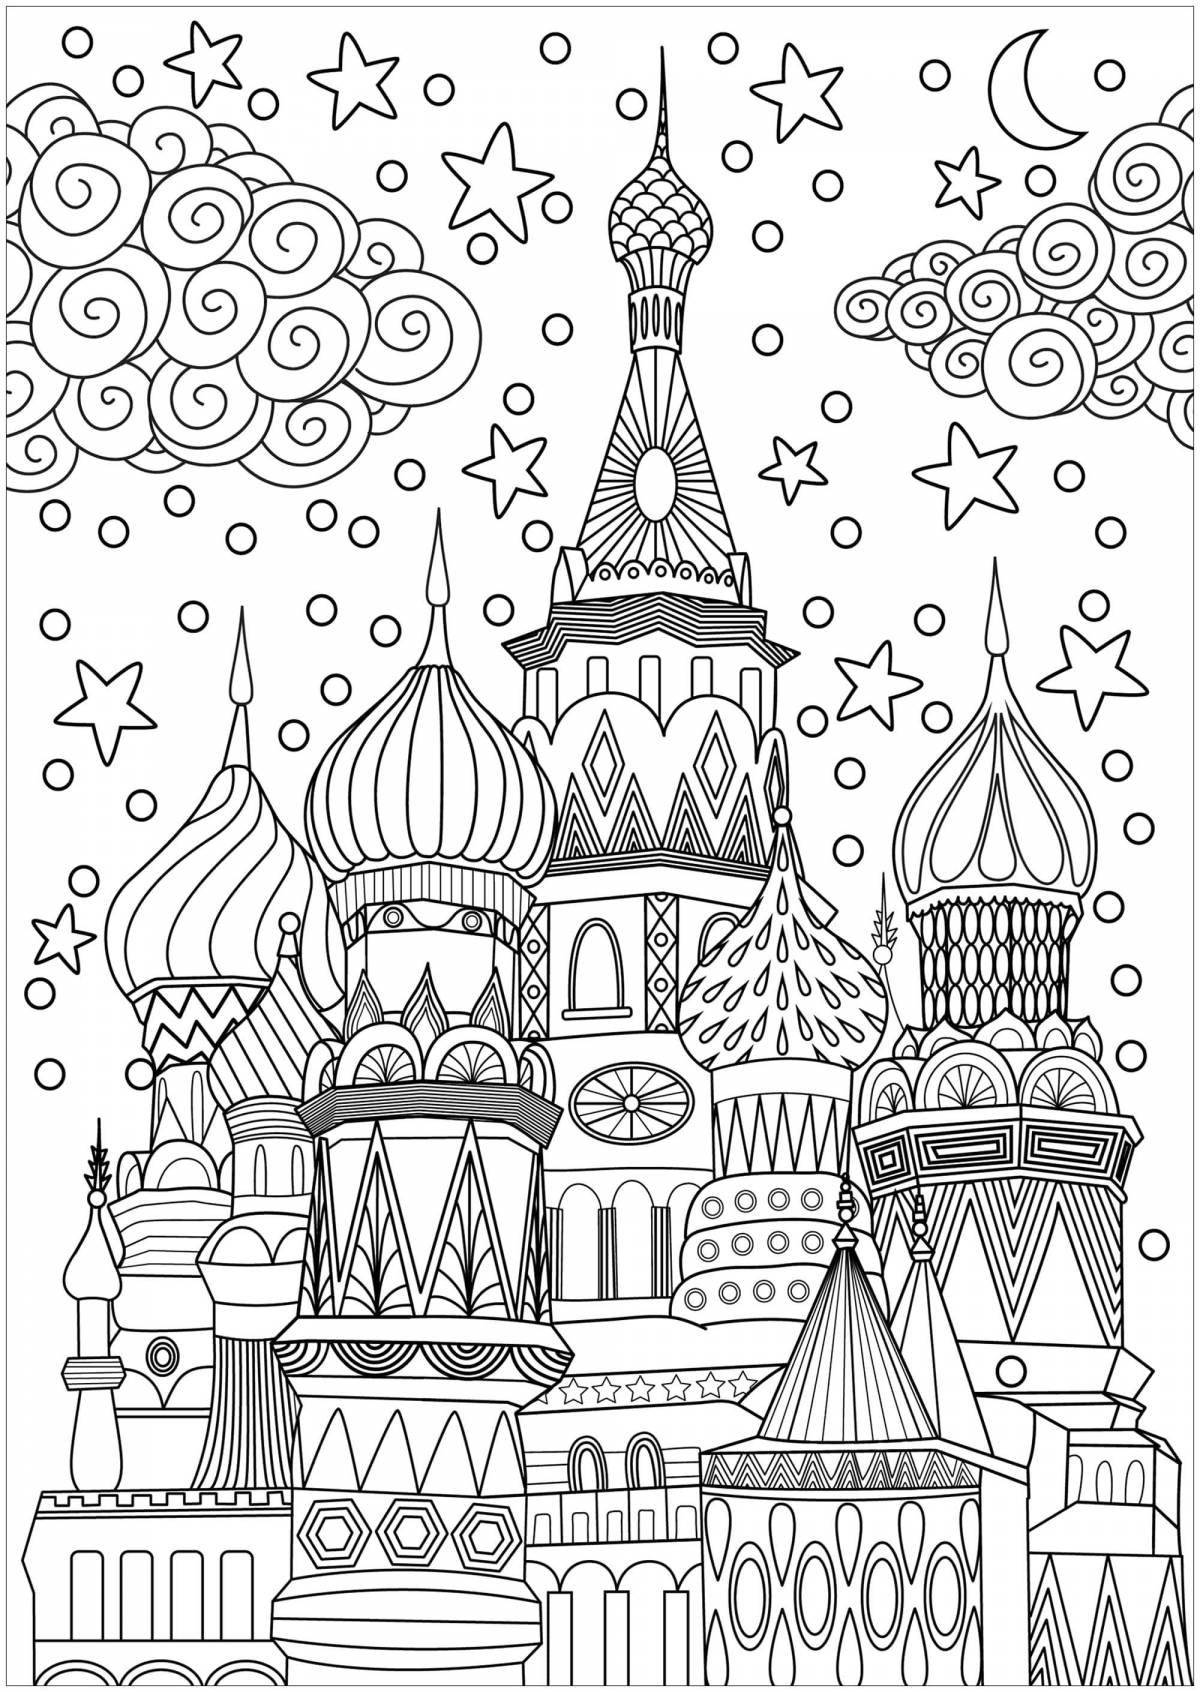 Delightful drawing of the Kremlin for children